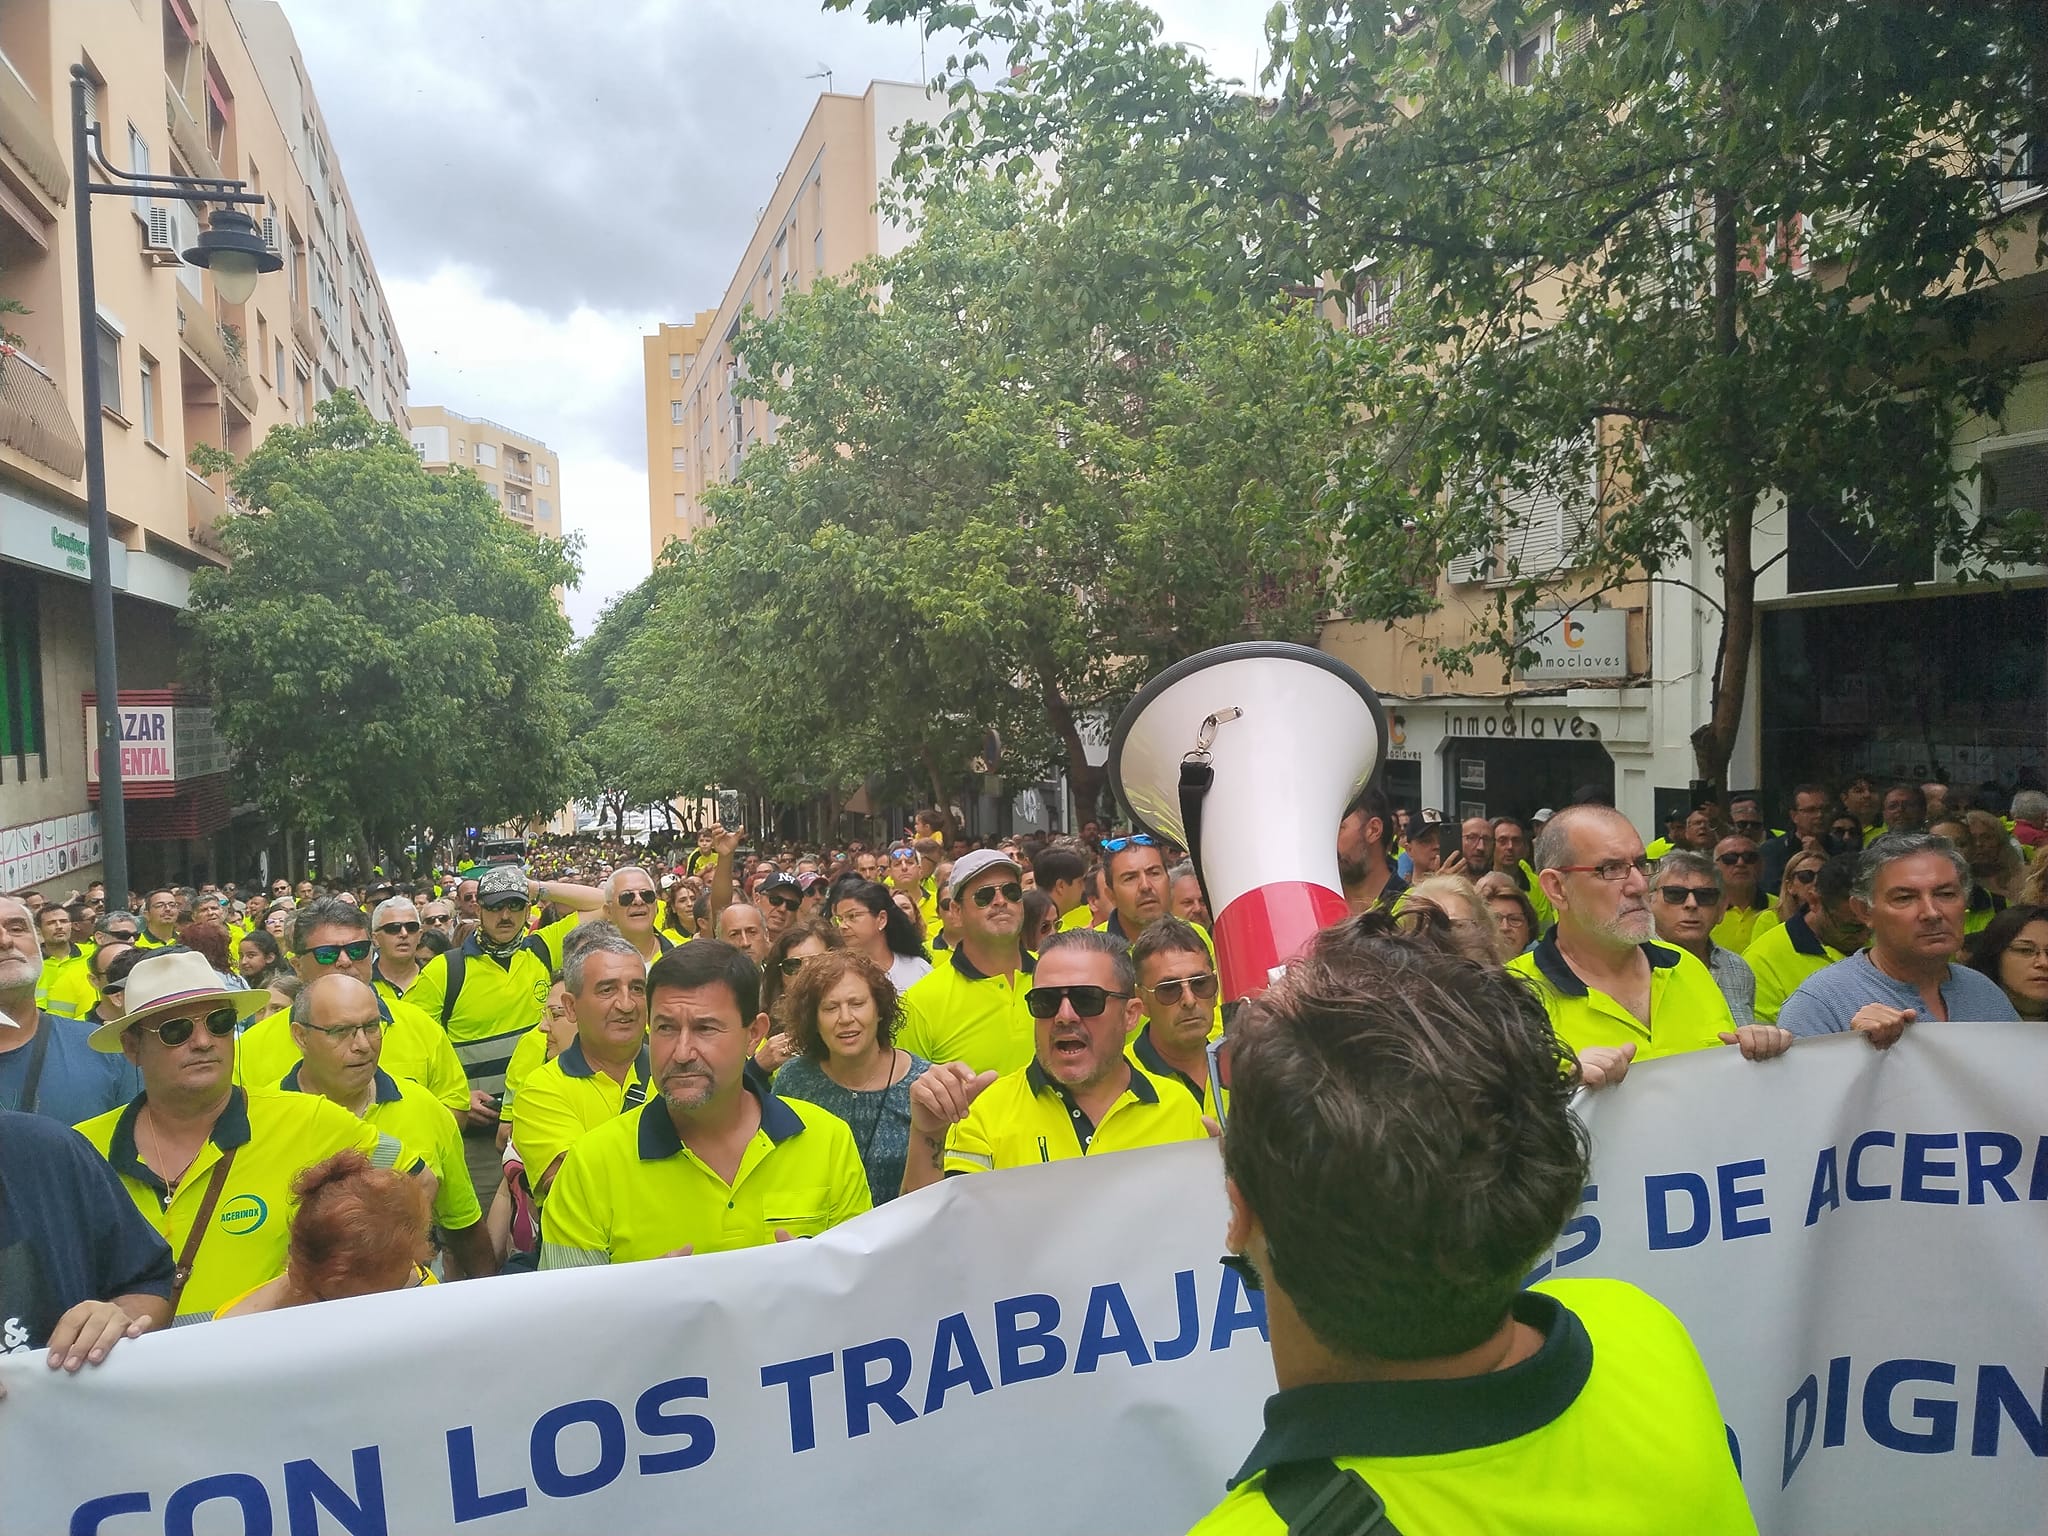 Acerinox informa al comité que la reducción de la plantilla podría afectar a unos 700 trabajadores. Manifestación de los trabajadores de Acerinox, en Algeciras. Foto: M.A.B.